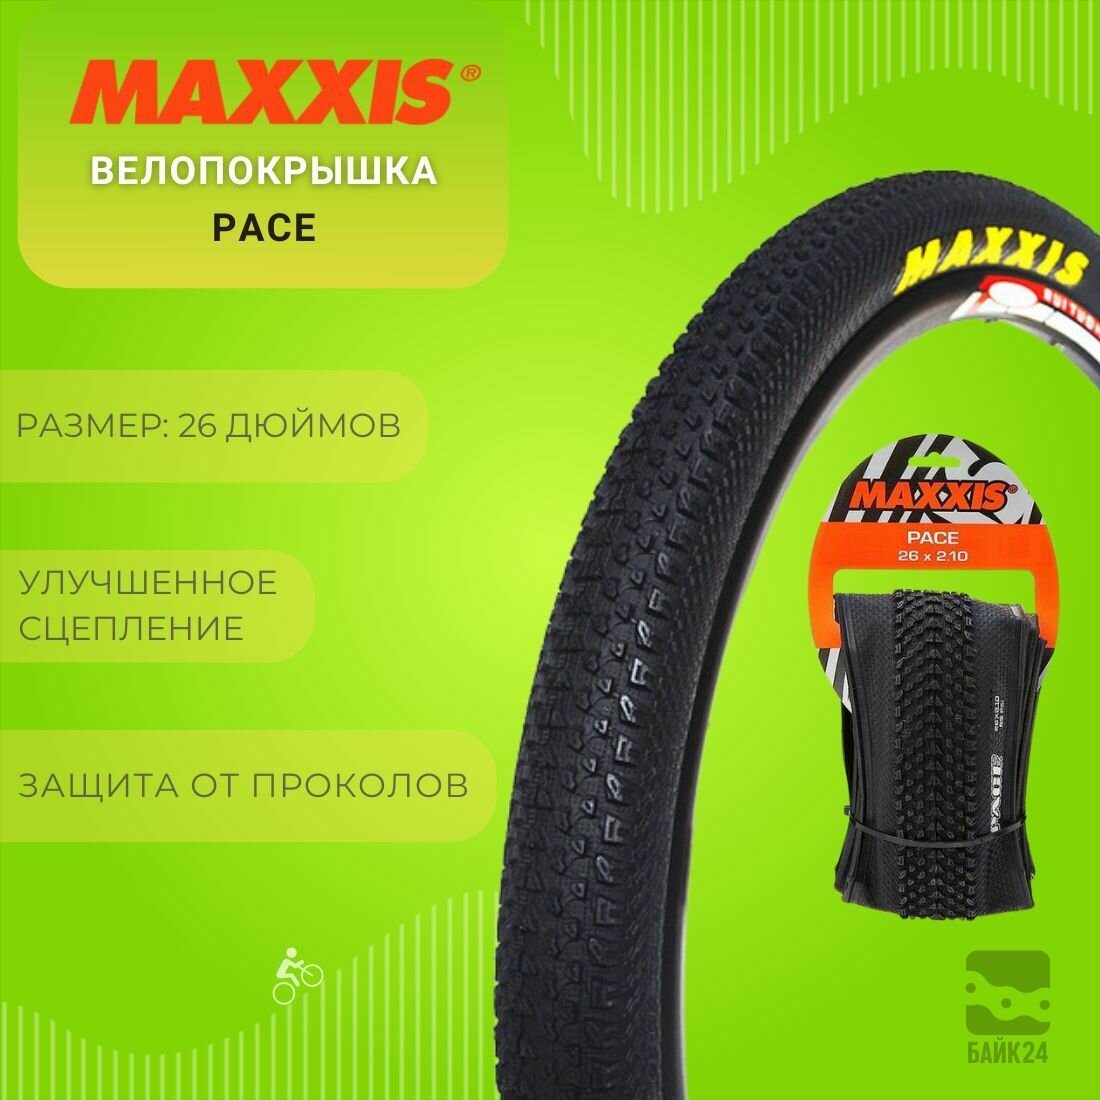 Велопокрышка Maxxis Pace M333 26x2,1 с кевларовым кордом